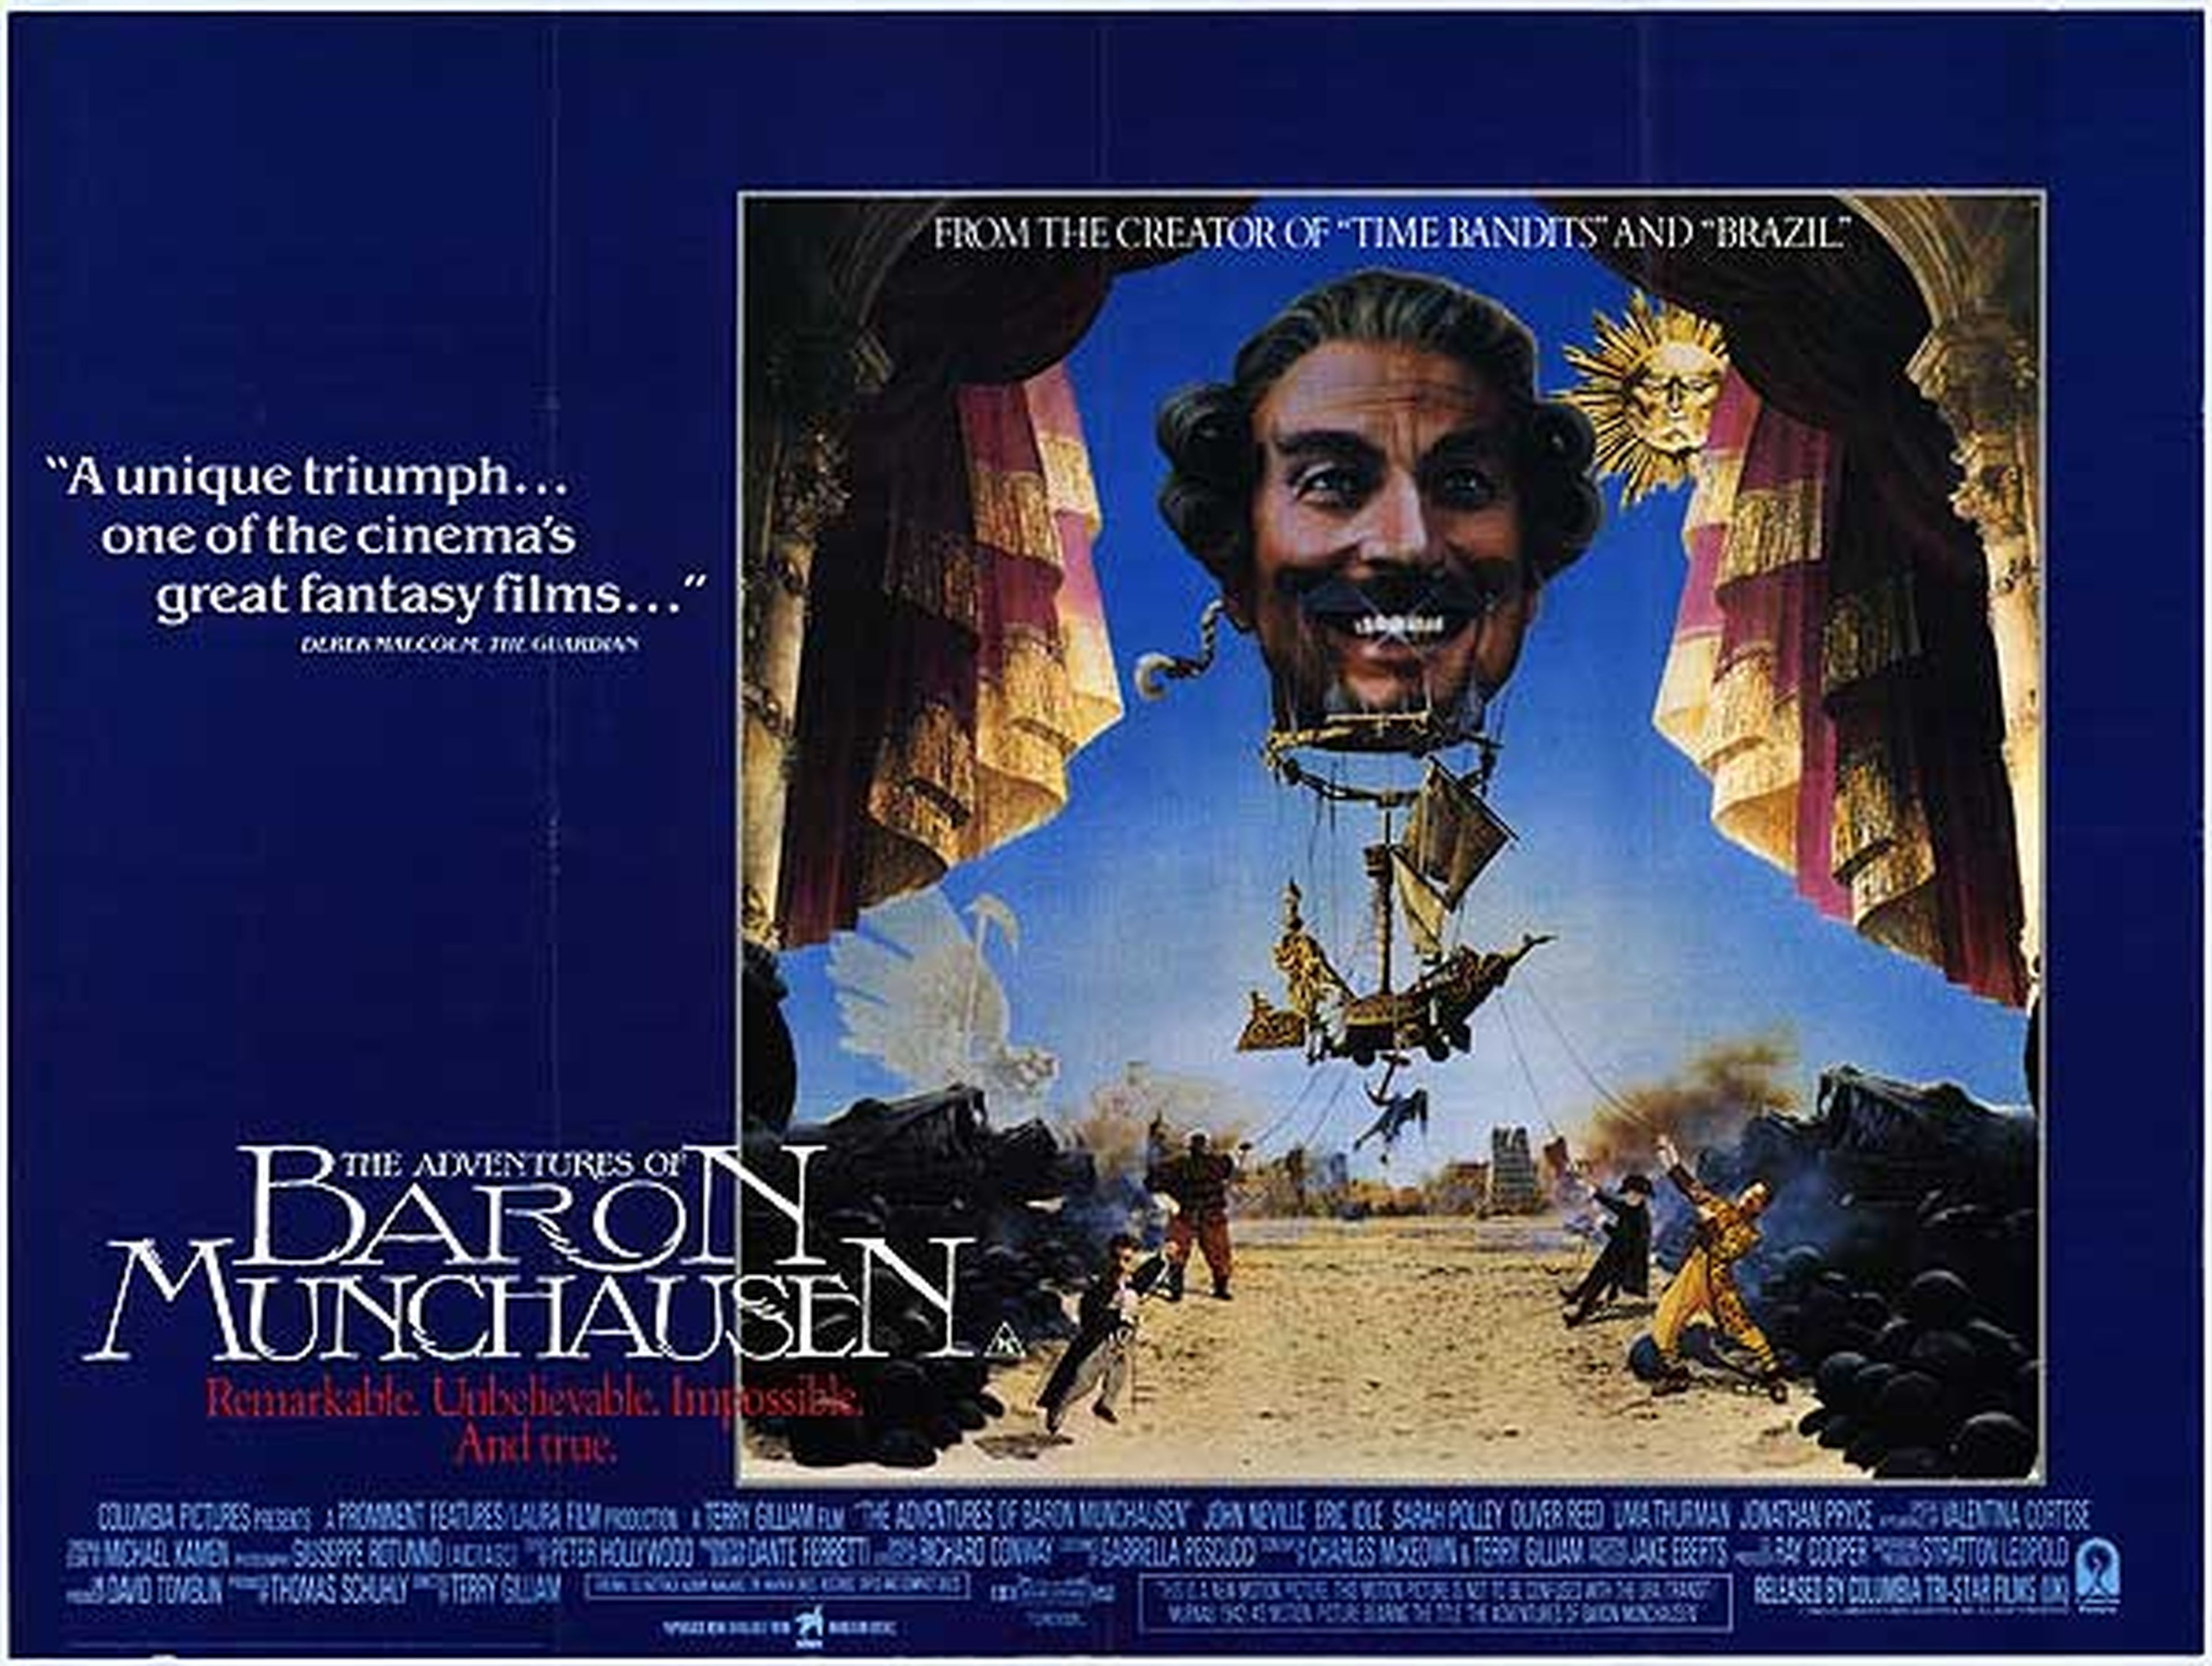 Las aventuras del barón Munchausen (1988)